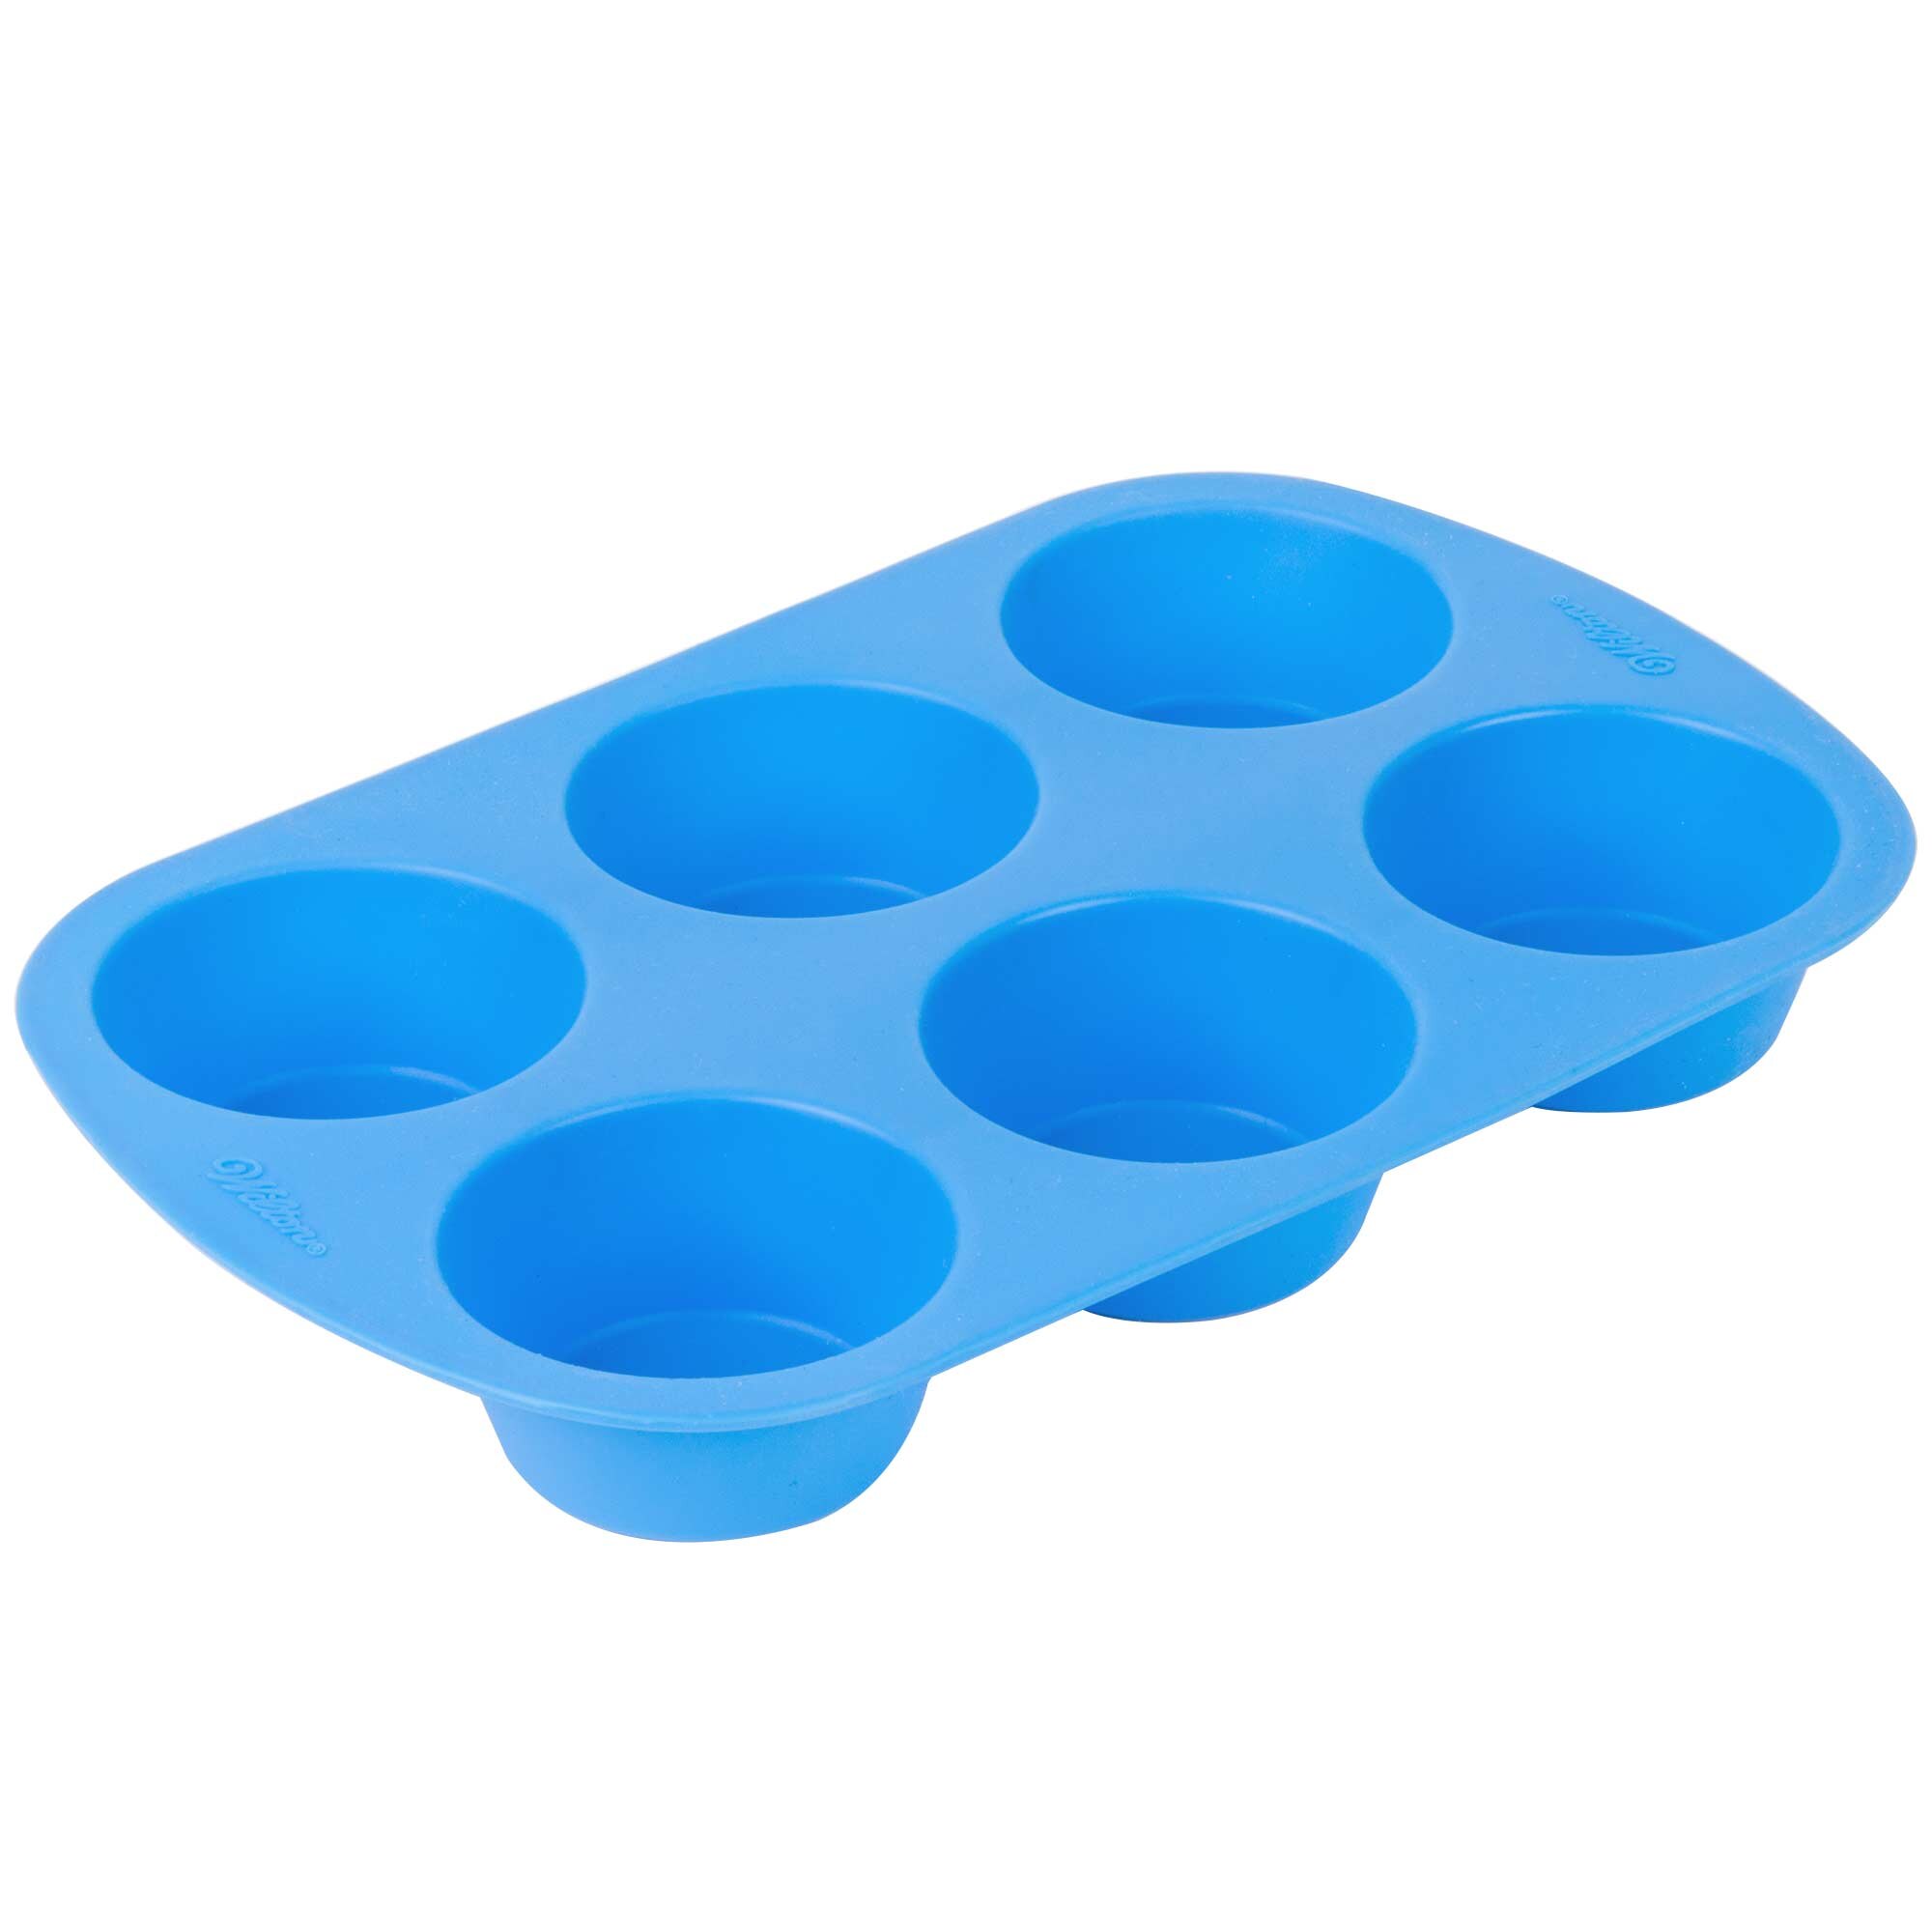 Wilton 2105-4802 Easy-Flex Silicone 6-Cup Muffin Mold